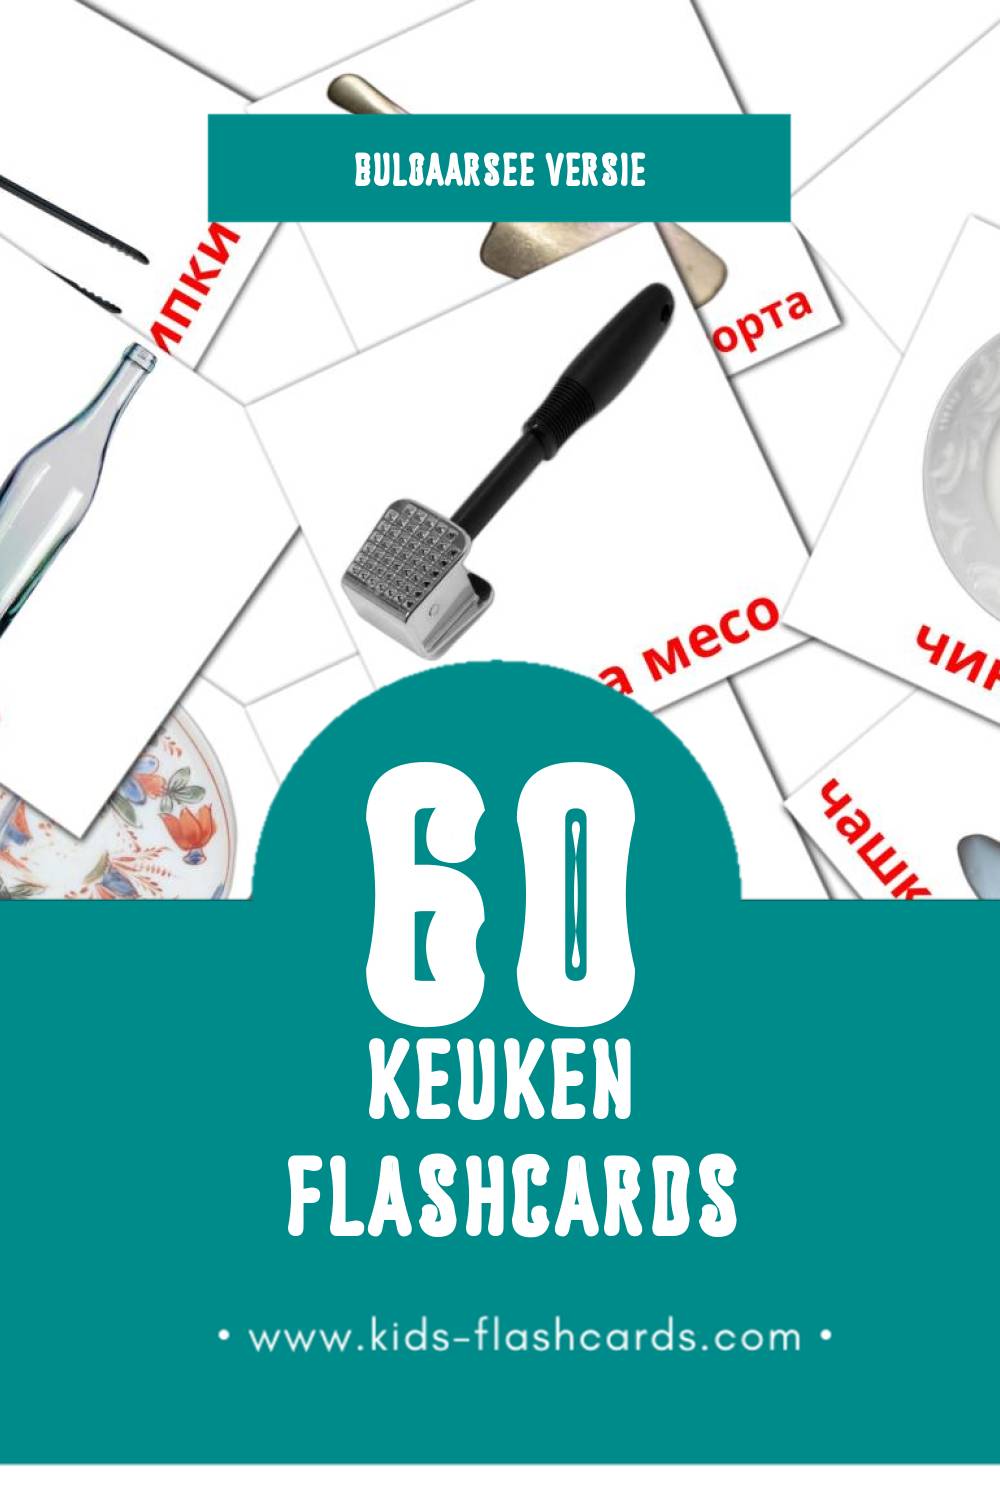 Visuele Кухня Flashcards voor Kleuters (60 kaarten in het Bulgaarse)